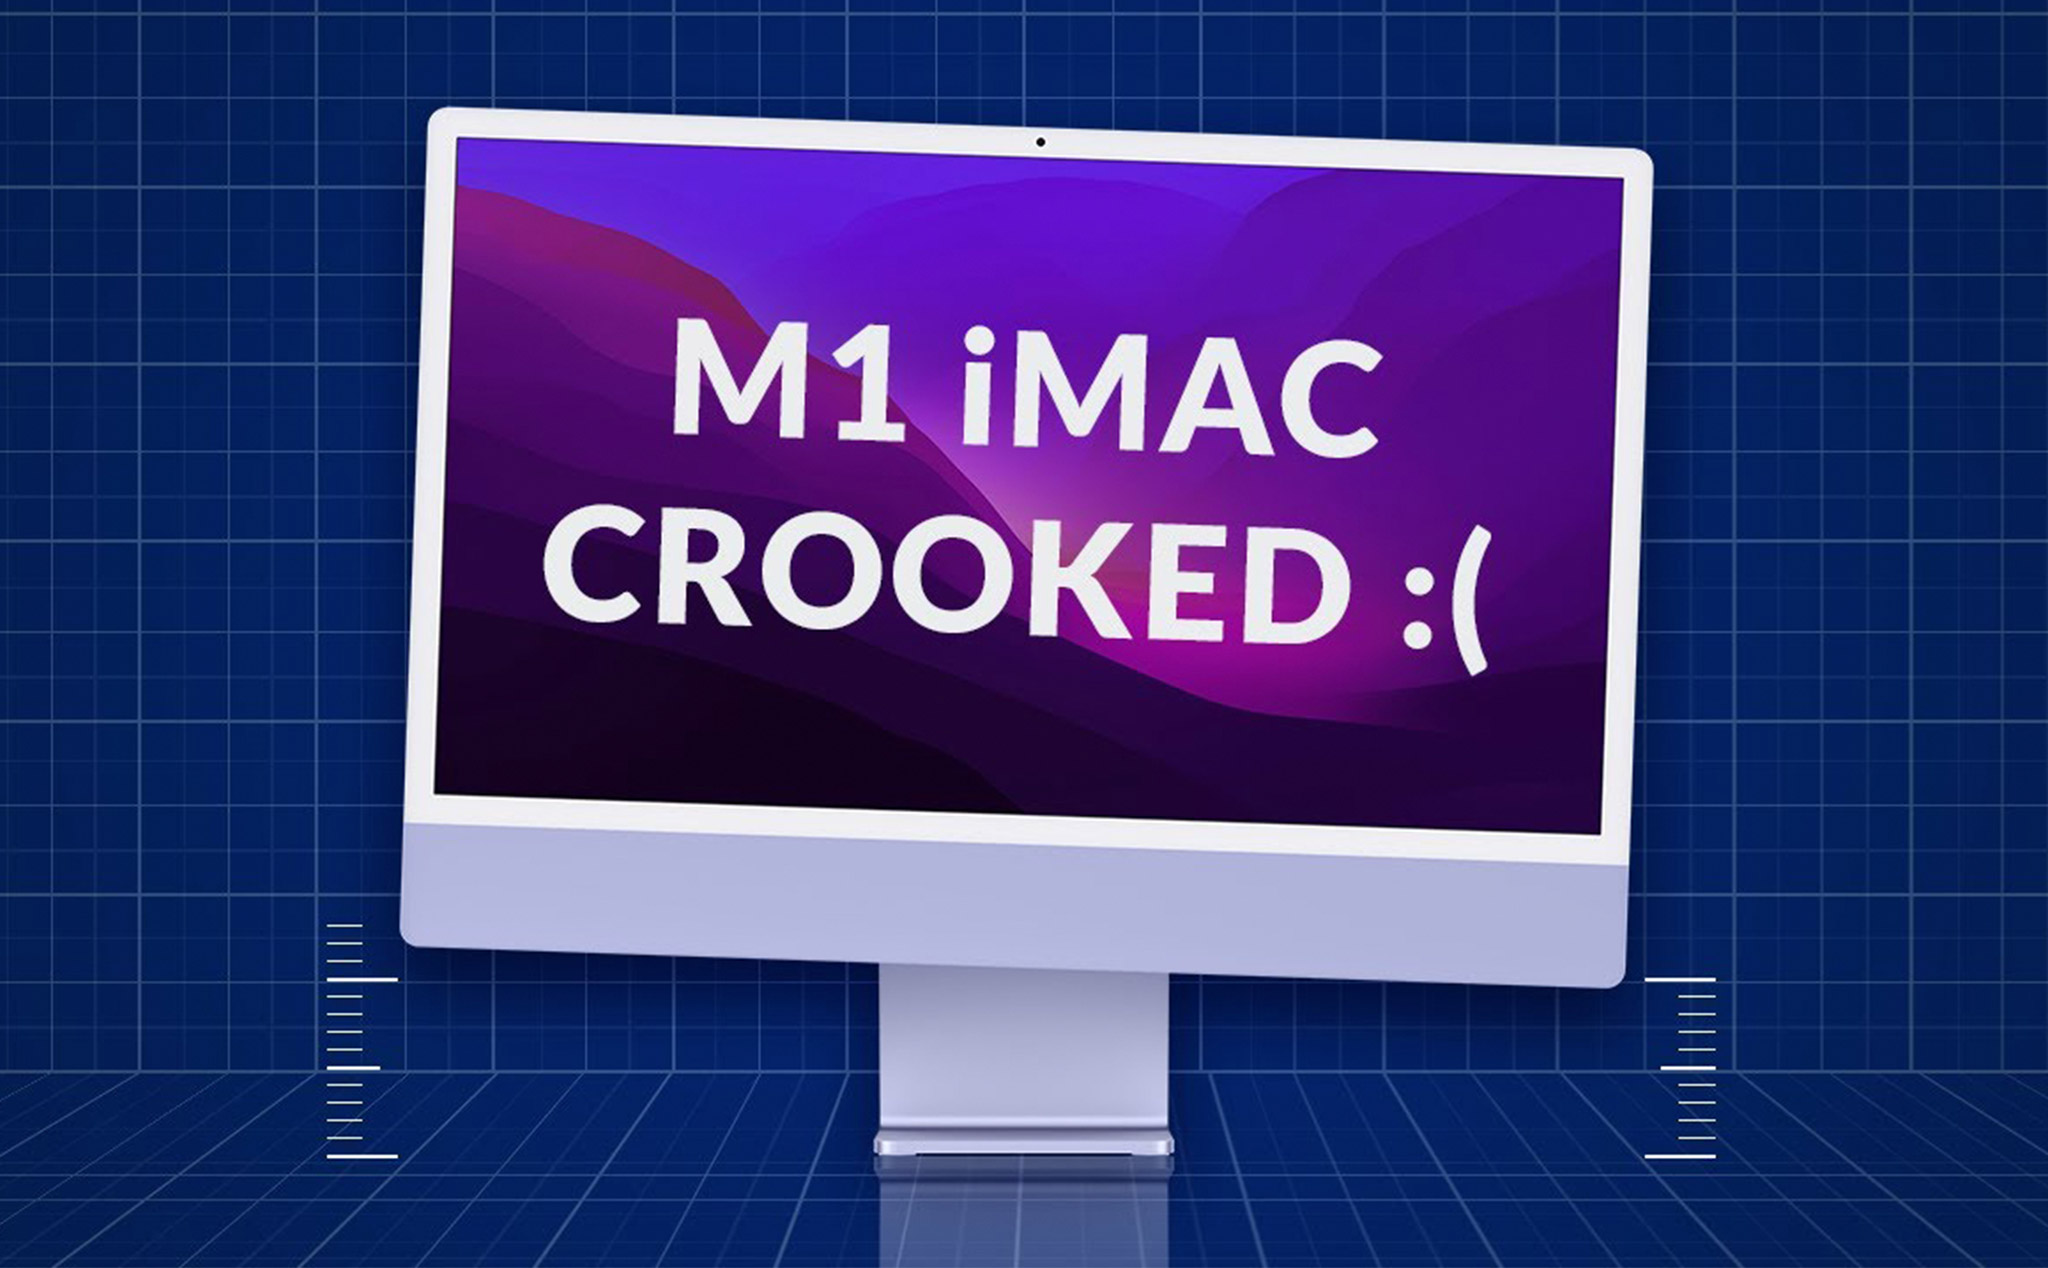 Máy tính iMac M1 của bạn bị nghiêng chân đế và gây mất cân bằng? Đừng lo, chúng tôi có giải pháp sửa chữa. Xem hình ảnh liên quan để biết cách sửa lỗi hiệu quả và nhanh chóng để trở lại việc sử dụng máy tính thật suôn sẻ nhé!